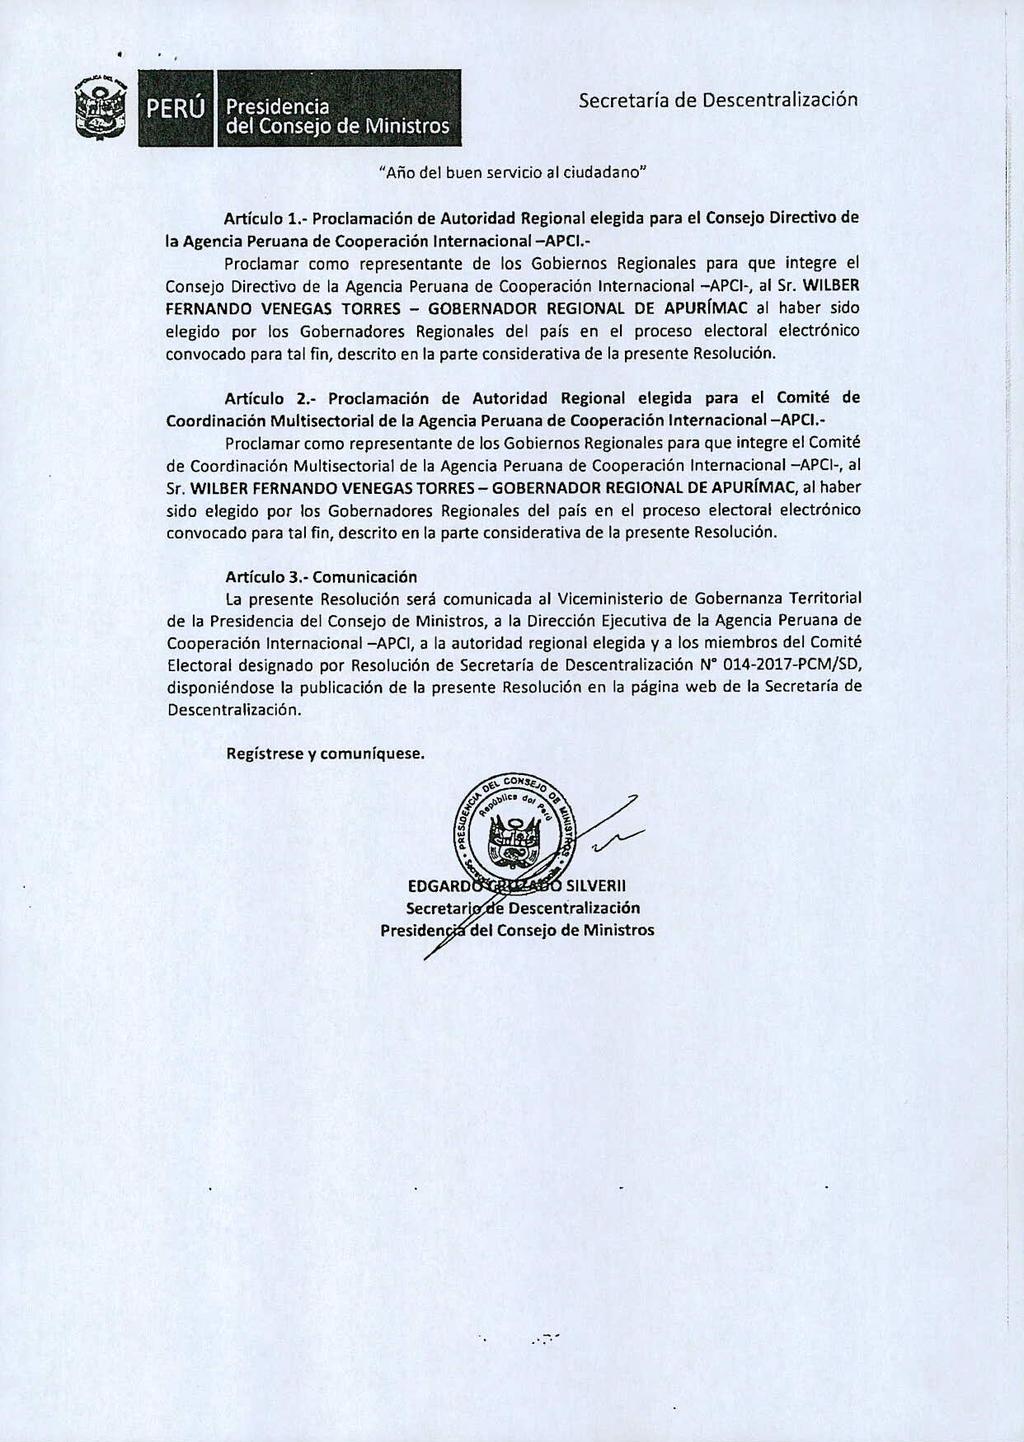 ii PERU Presidencia del Consejo de Ministros "A,io del buen servicio al ciudadano" Articulo 1.